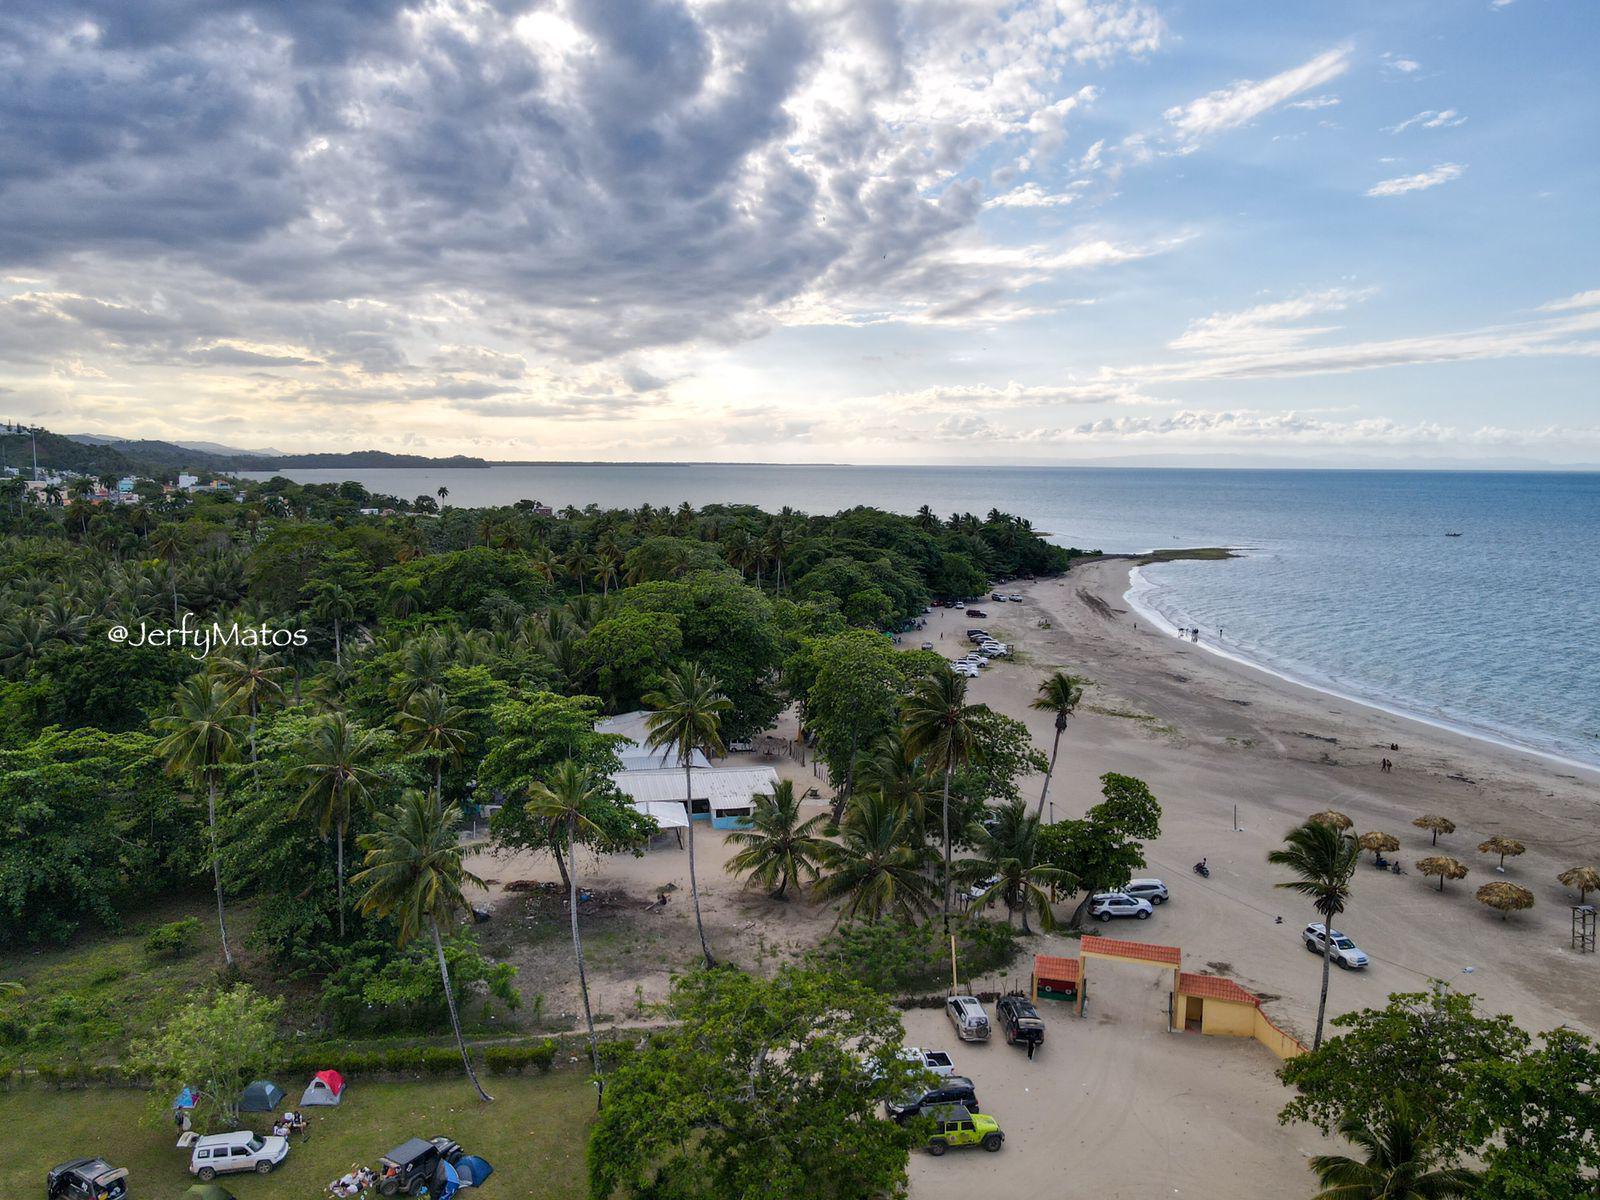 Imagen tomada de un dron del área de la playa Arriba y el restaurante Coco Loco, en Miches. Allí se pueden rentar villas y acampar en las casas de campaña. Foto: Jerfy Matos